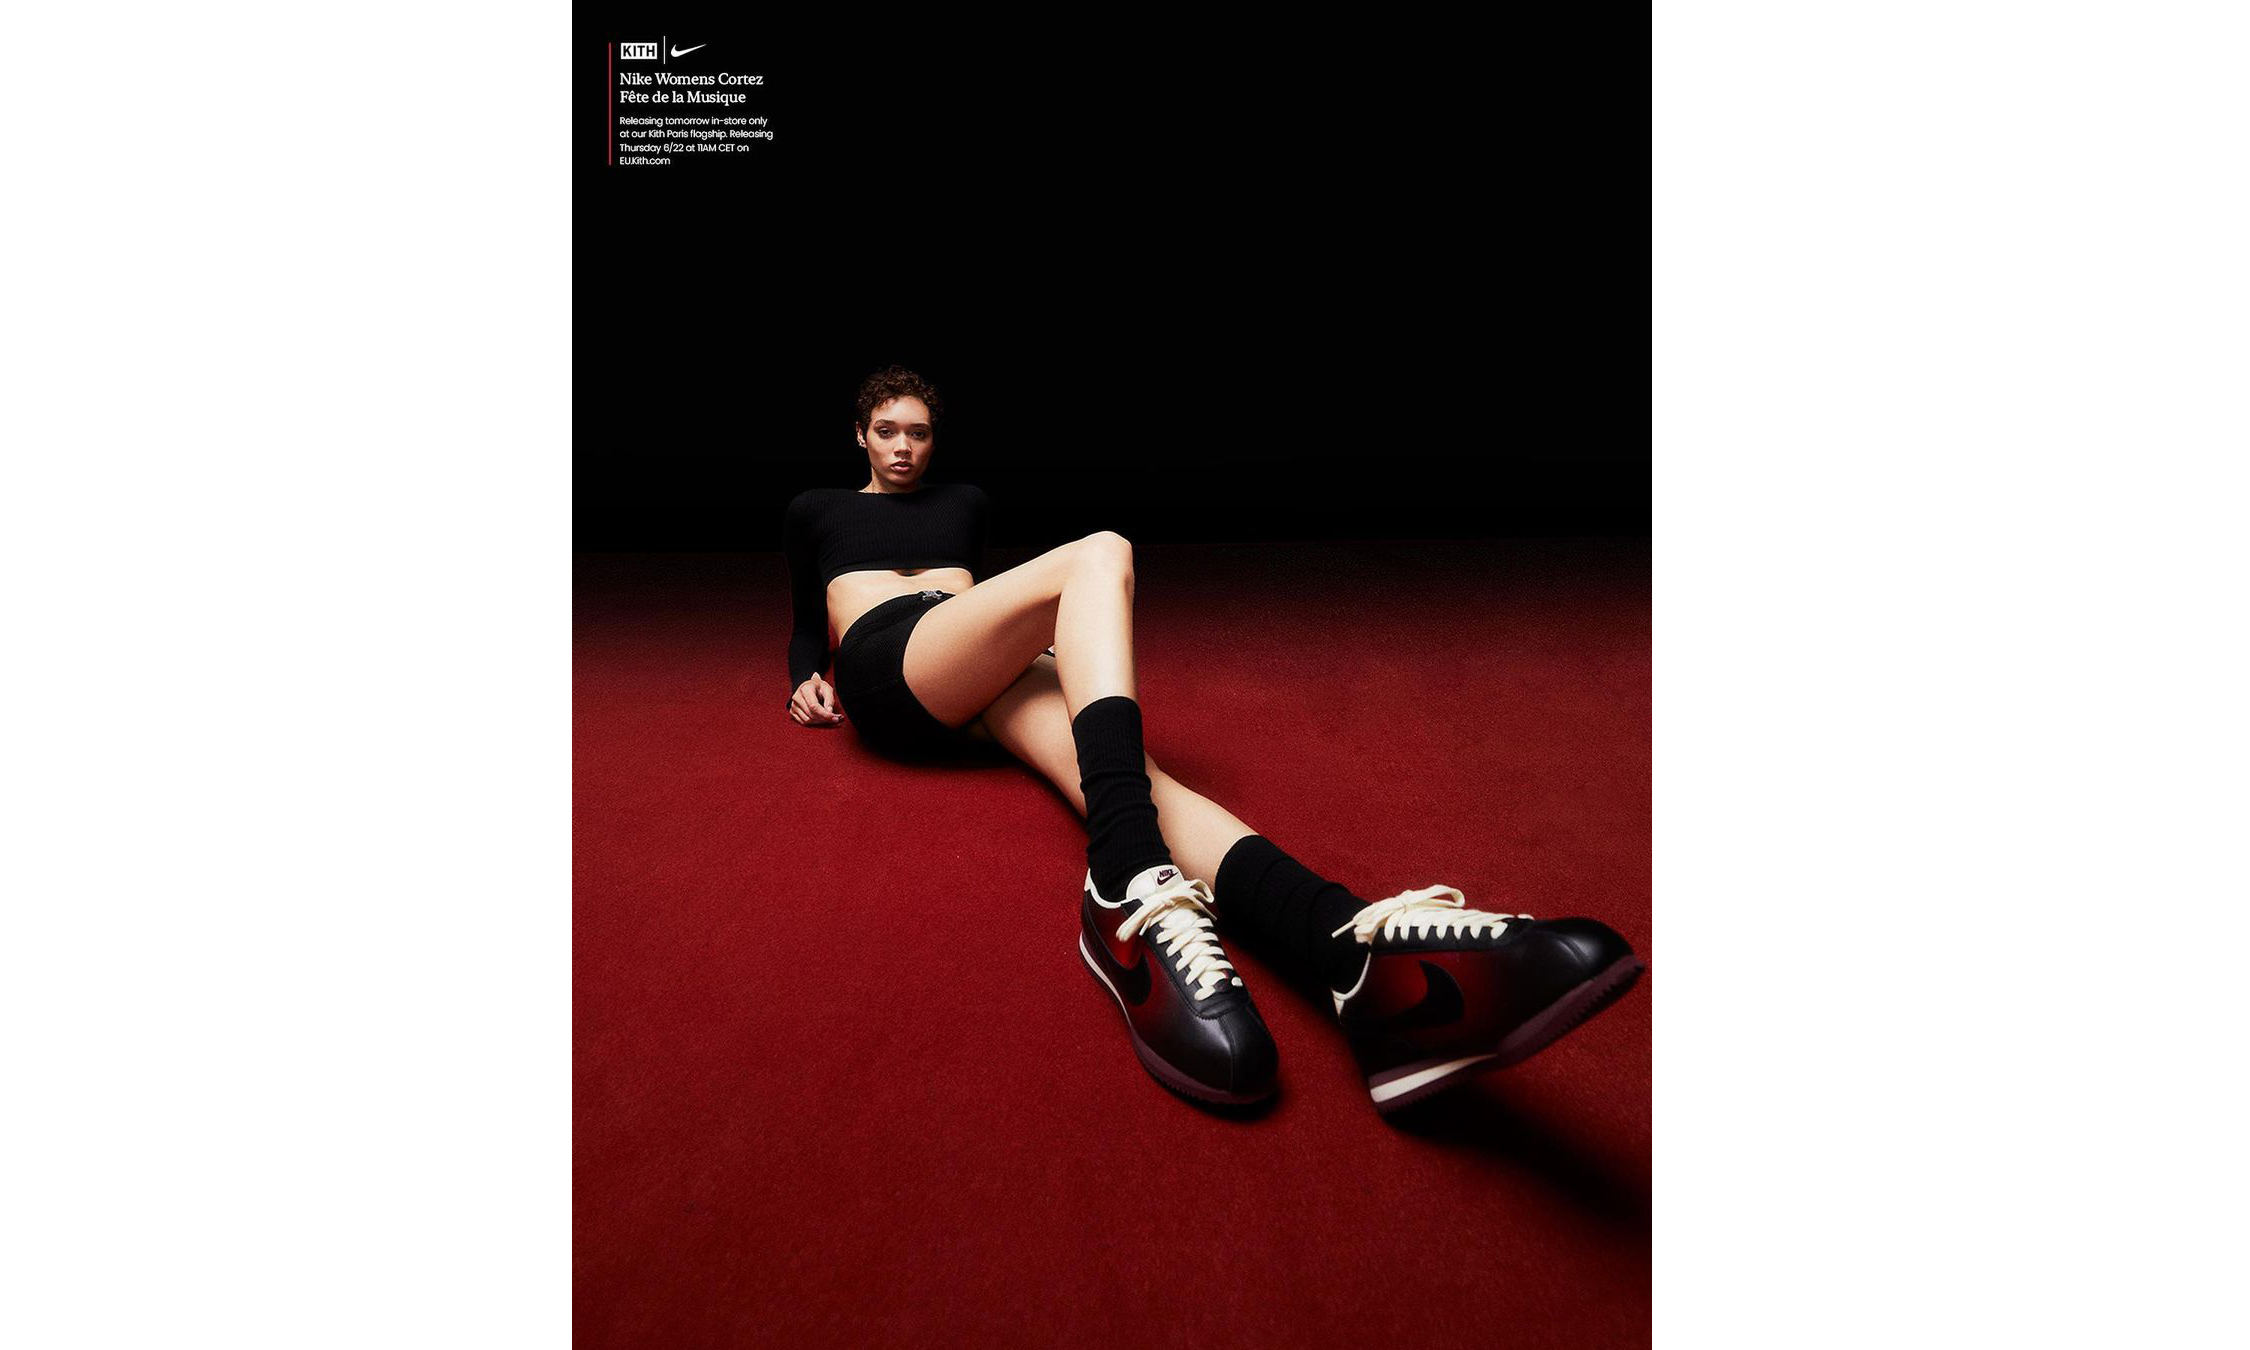 KITH 呈献 Nike Cortez「Fête de la Musique」主题鞋款